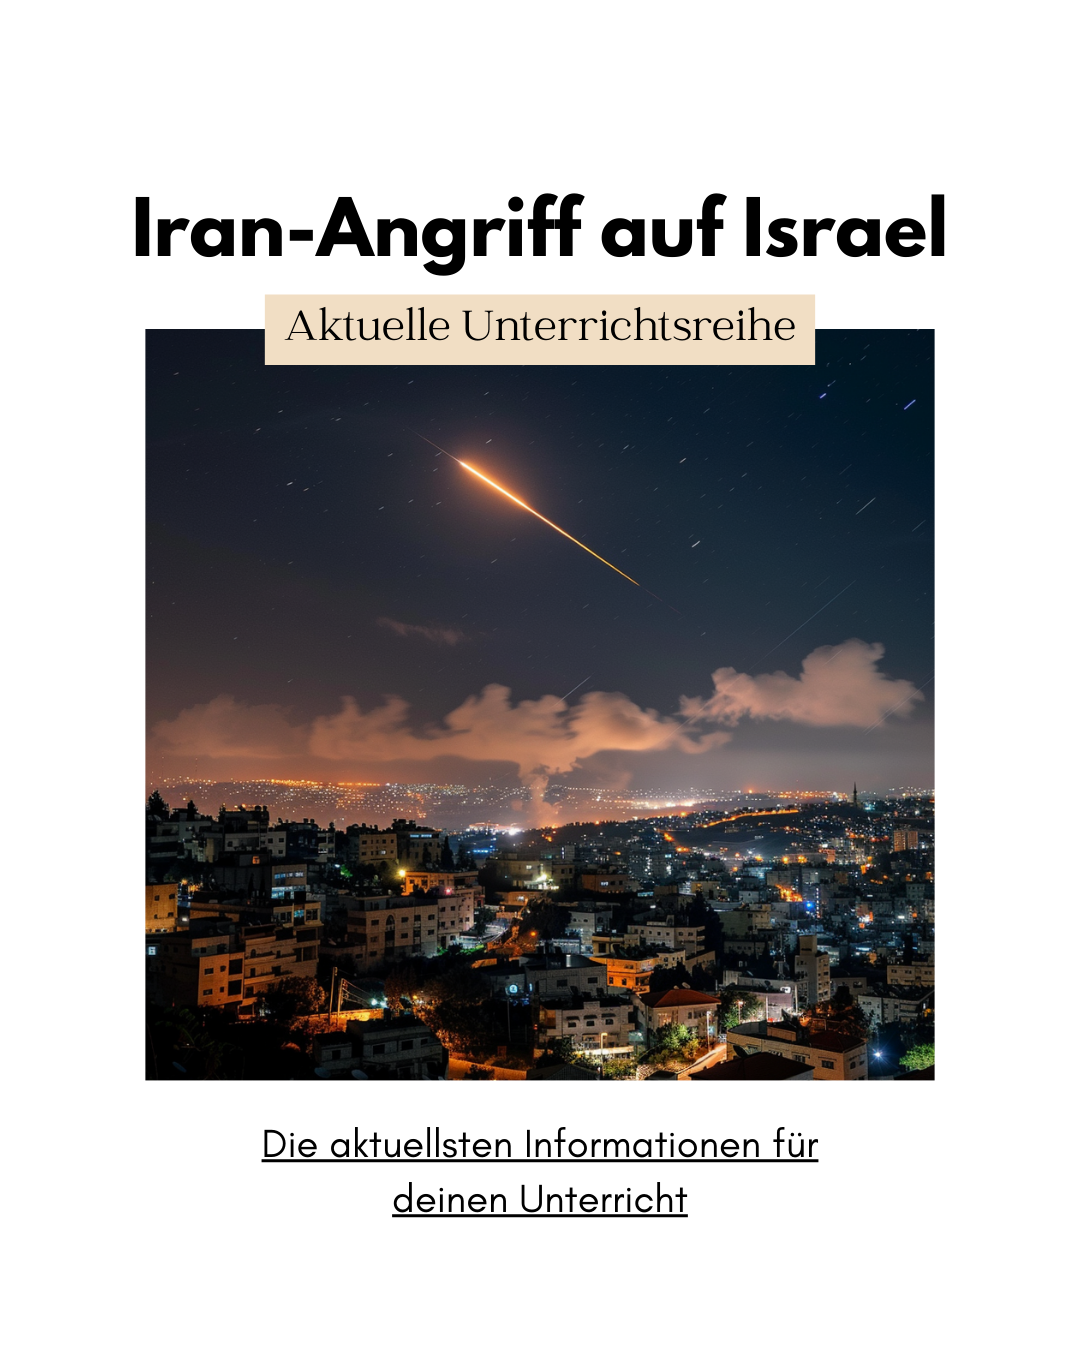 Aktuelle Unterrichtsreihe: Iran-Angriff auf Israel